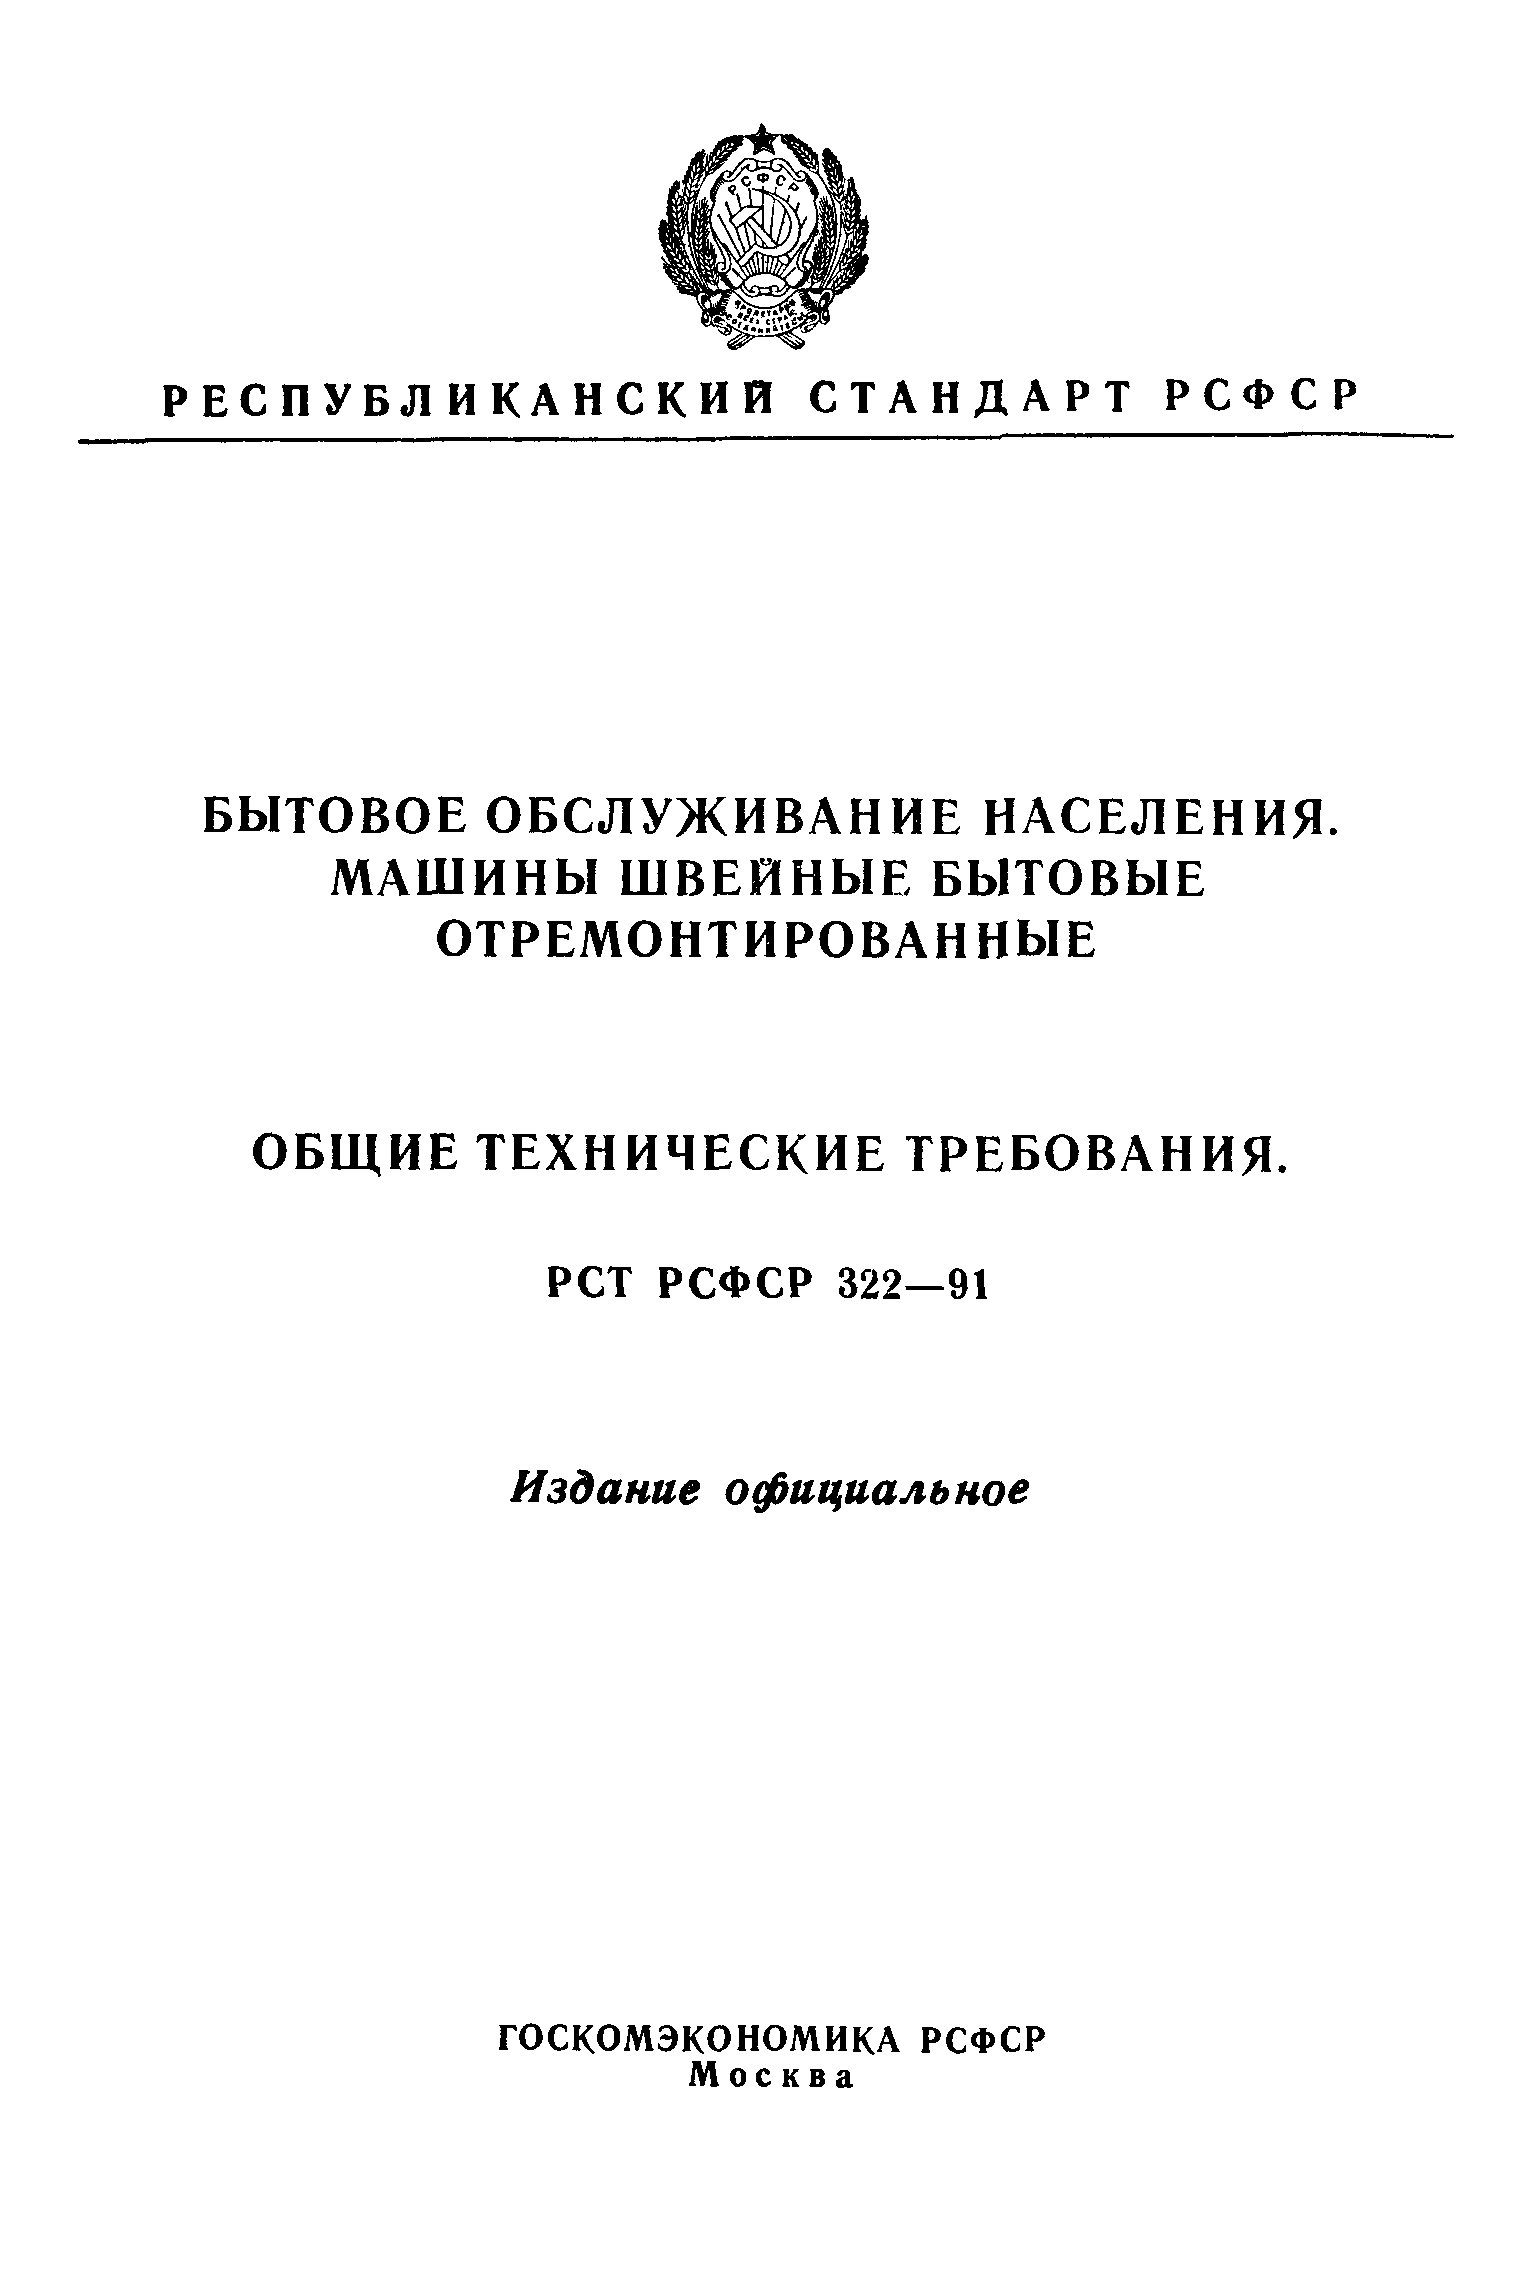 РСТ РСФСР 322-91